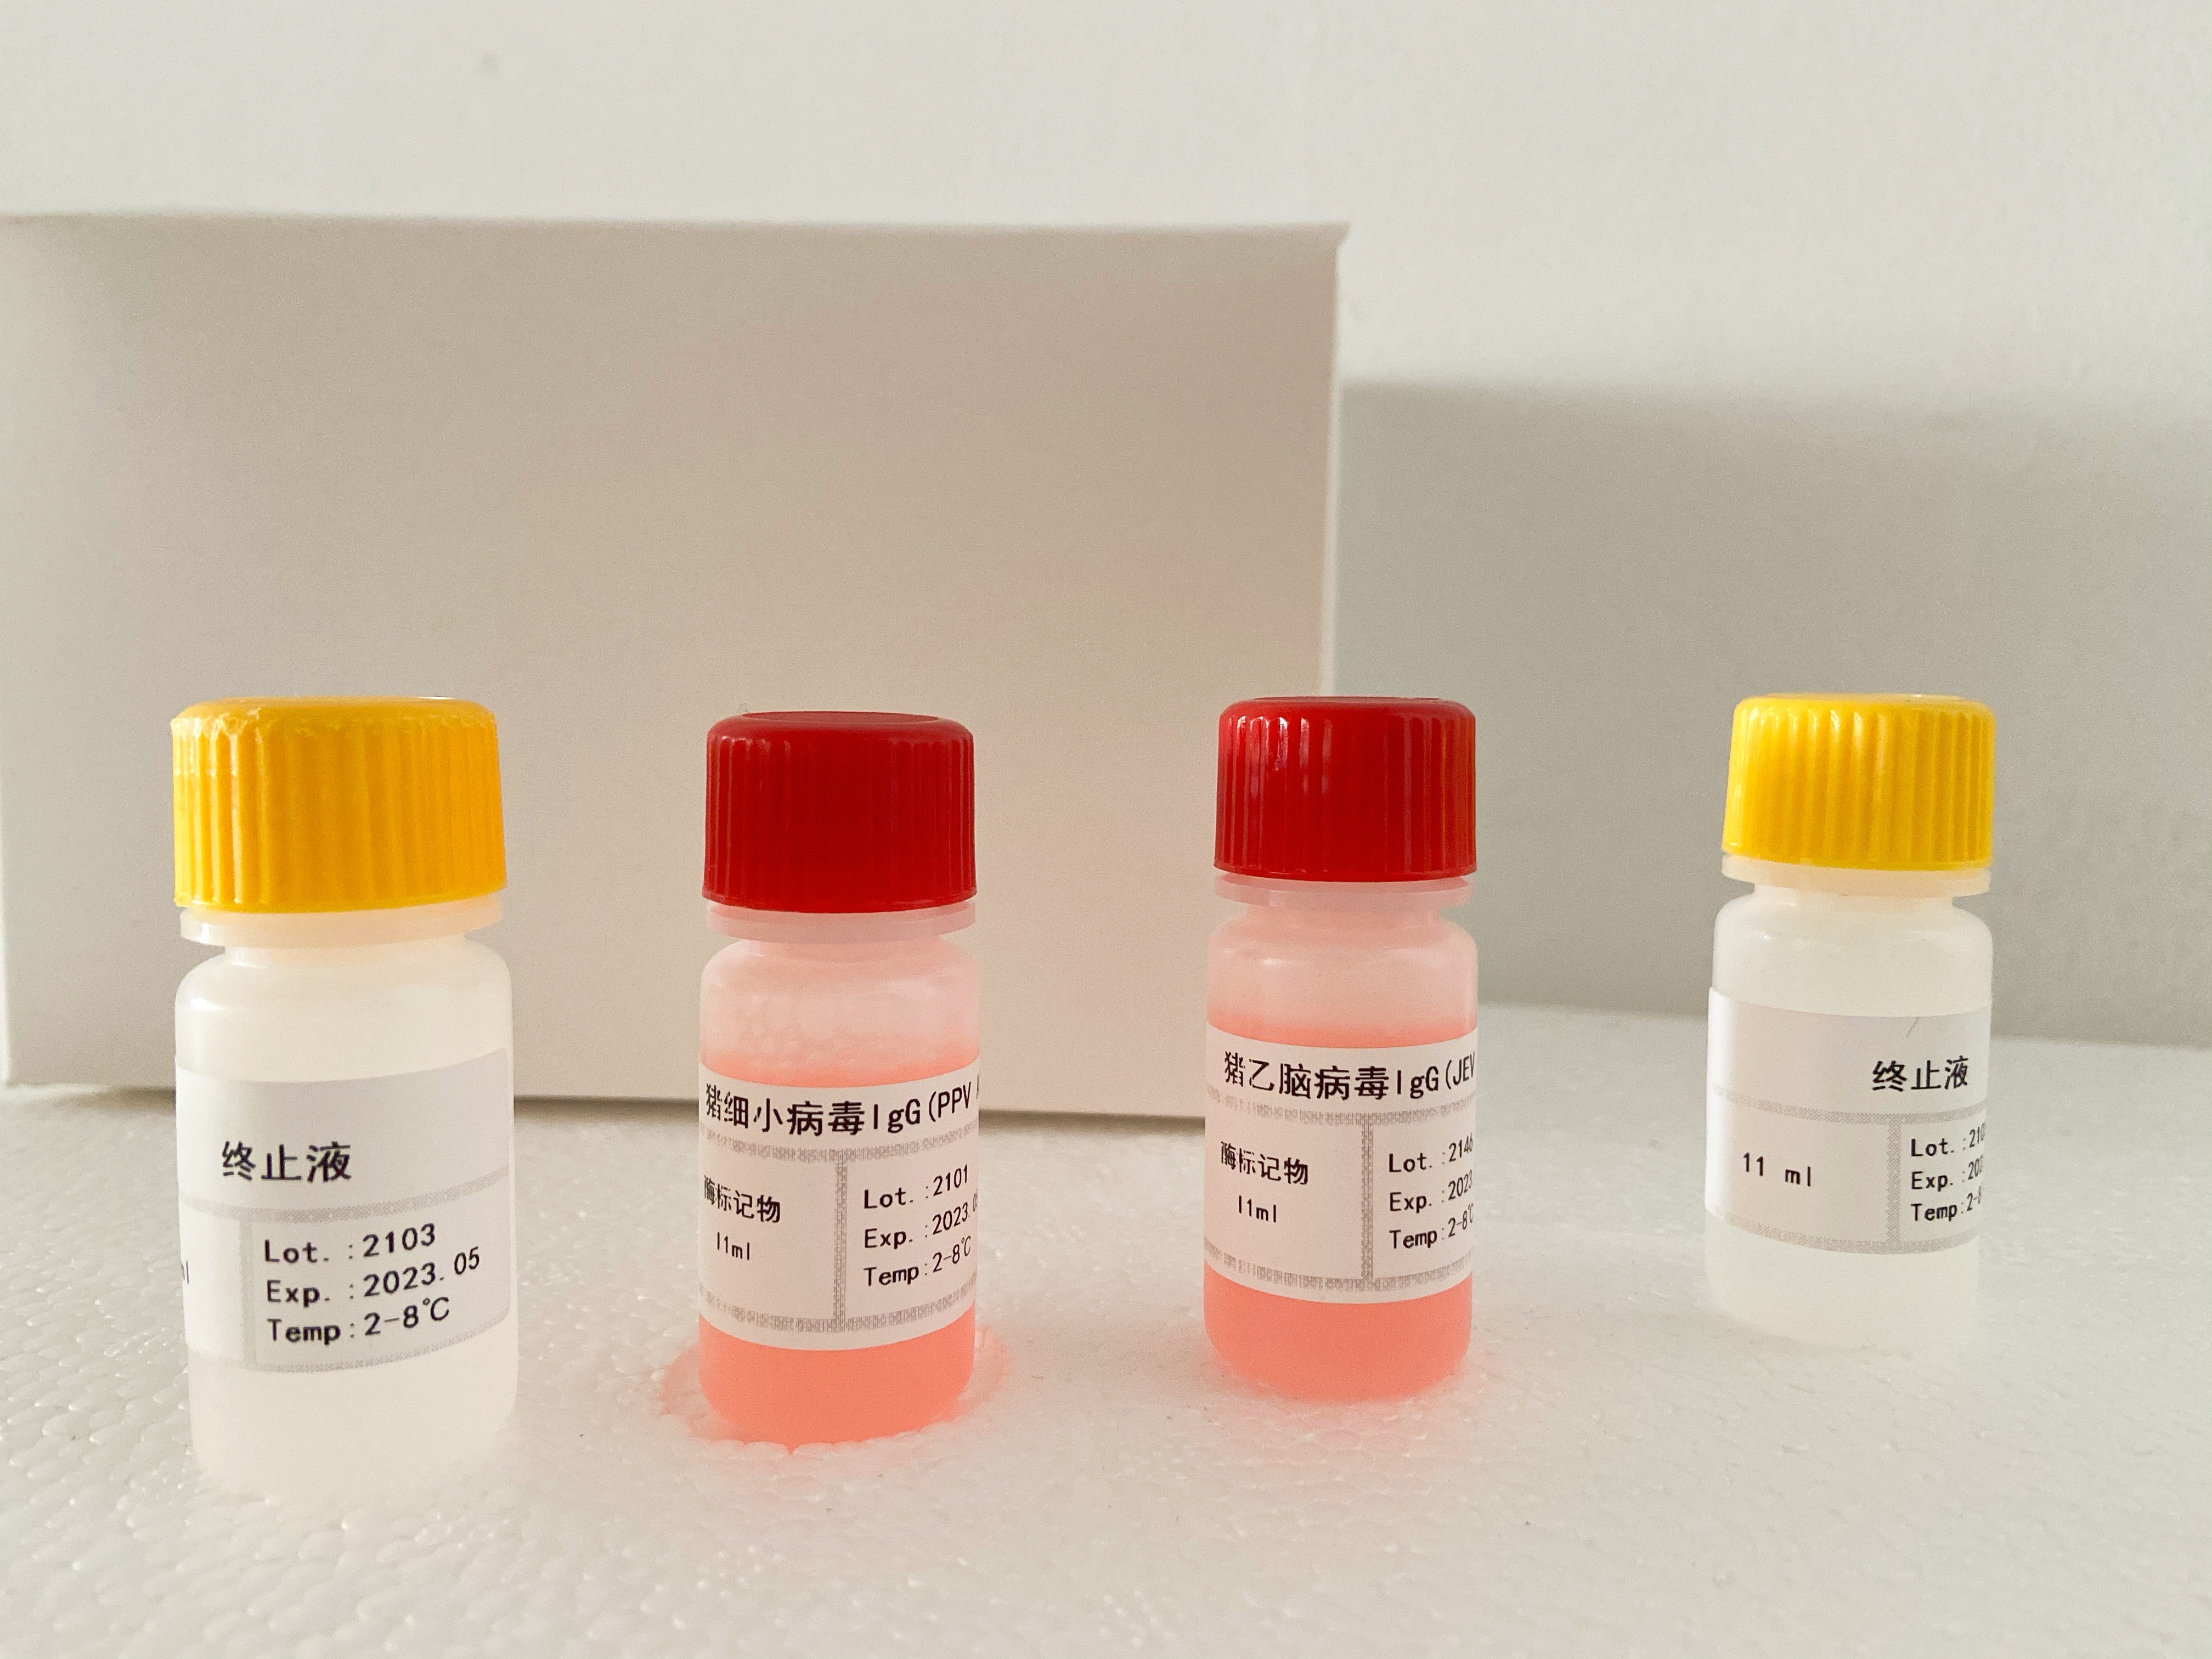 小鼠糖原合成酶激酶(GSK)检测试剂盒